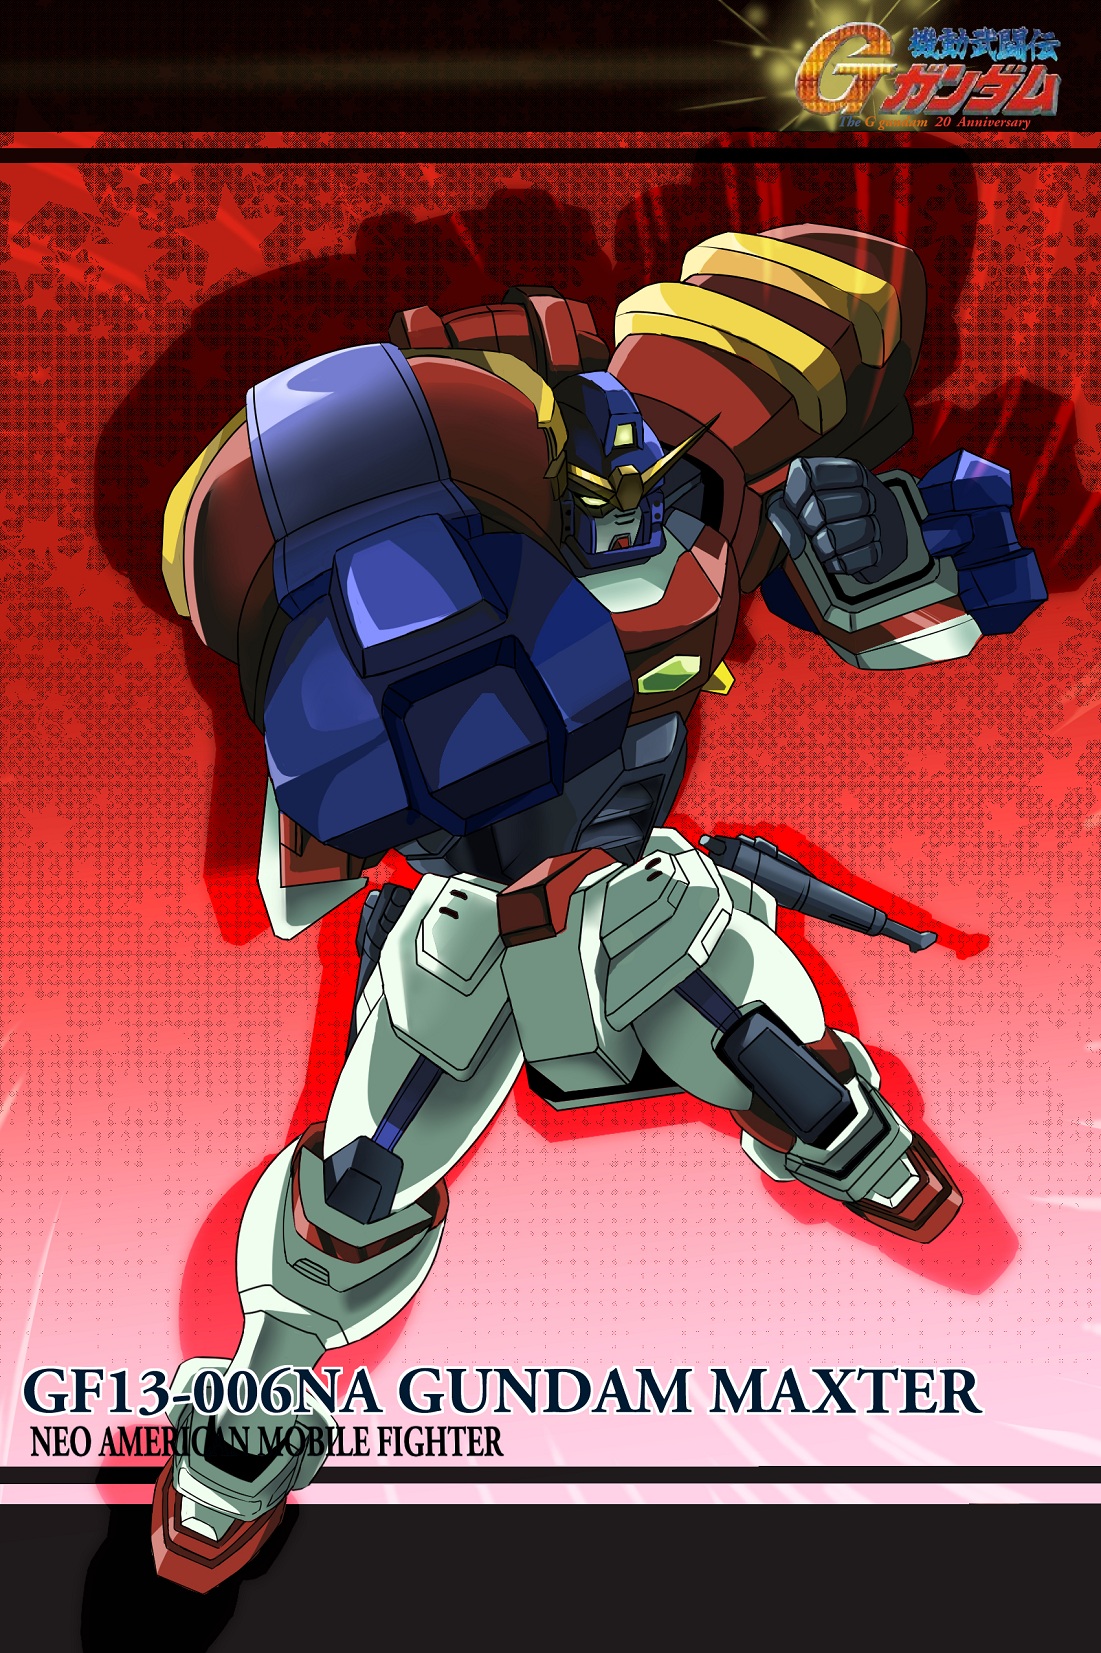 Anime 1101x1653 Gundam Maxter anime mechs Super Robot Taisen Mobile Fighter G Gundam Gundam artwork digital art fan art